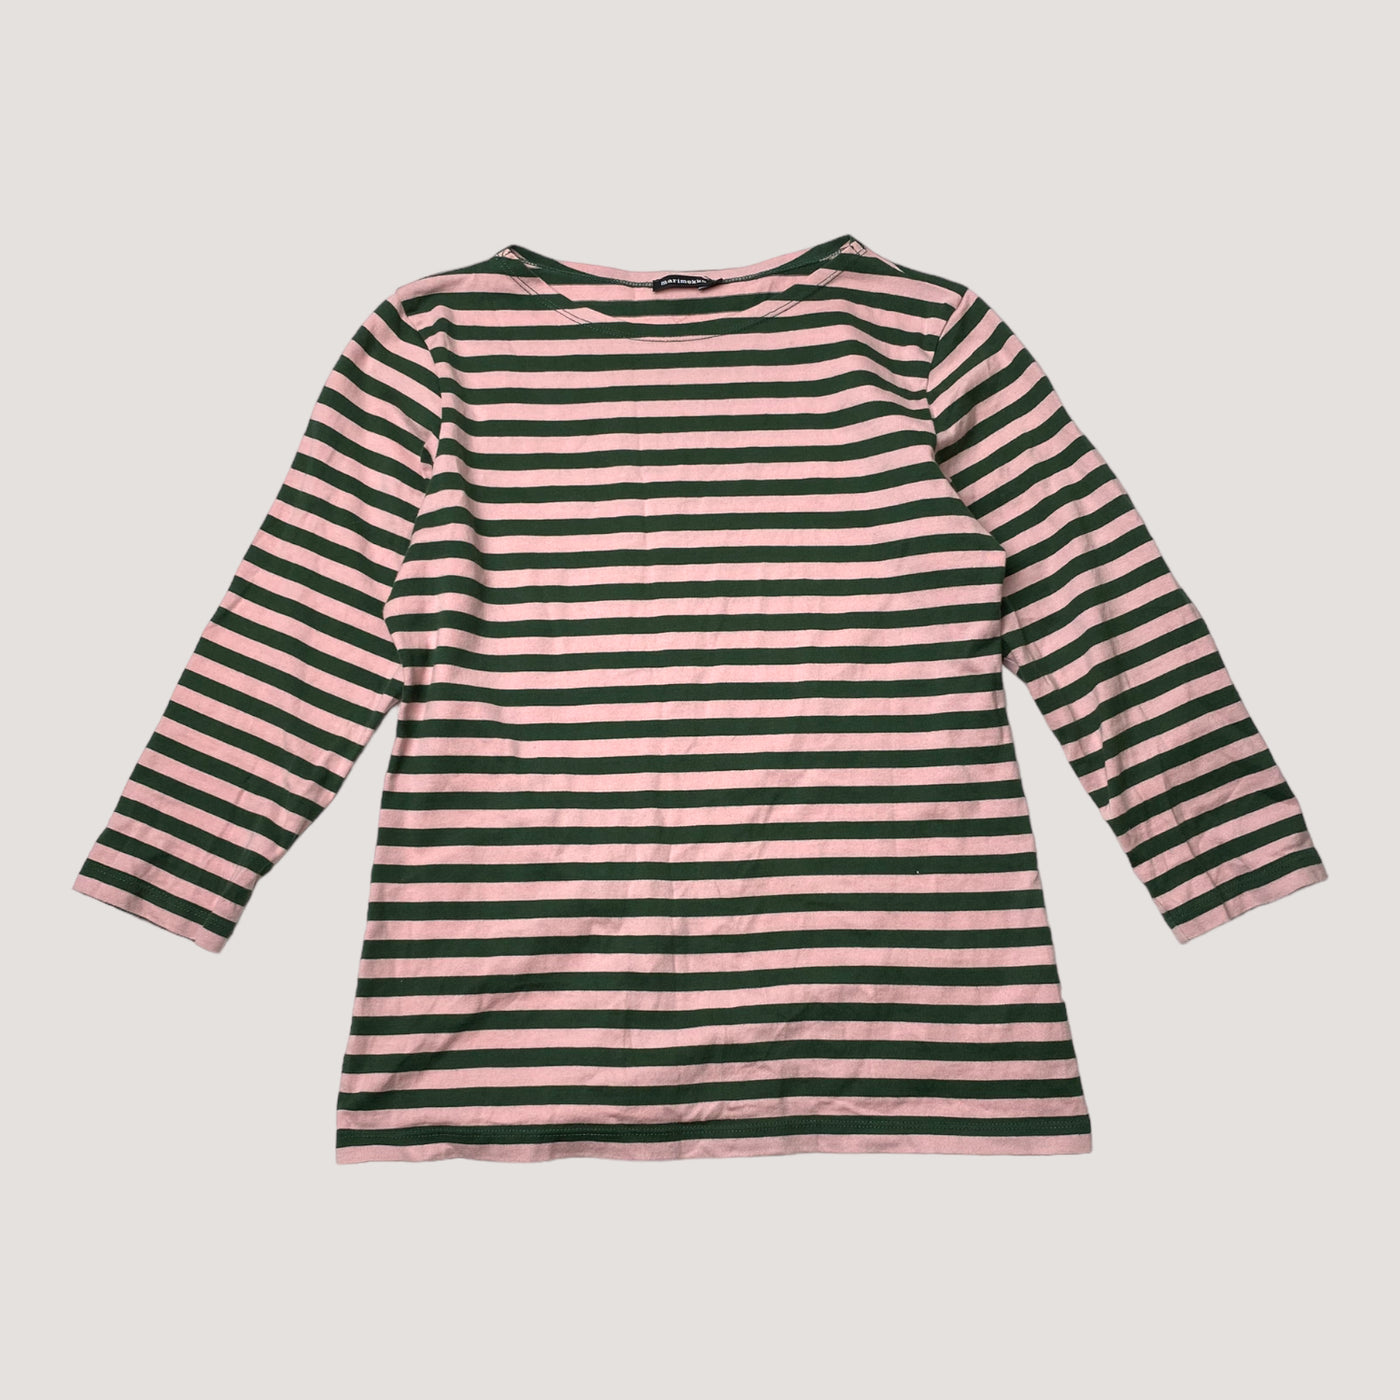 Marimekko stripe shirt, forest green & pink | woman XS